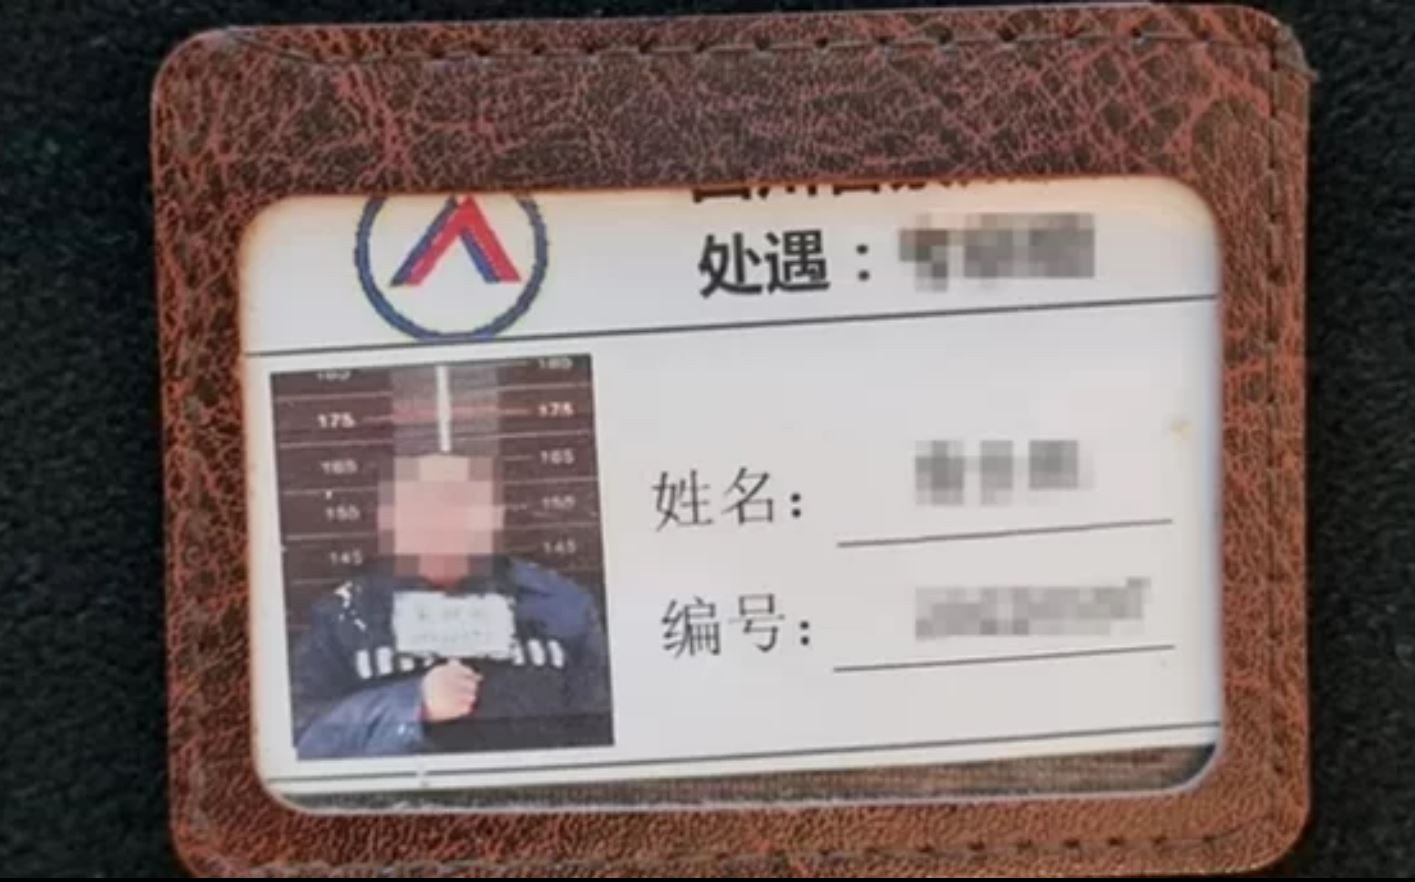 플라스틱 카드 지갑 안에 2022년 중국 교정 당국에서 발급한 죄수의 이름과 번호 등이 적혀있다. 사진 엑스(X·옛 트위터) 캡처